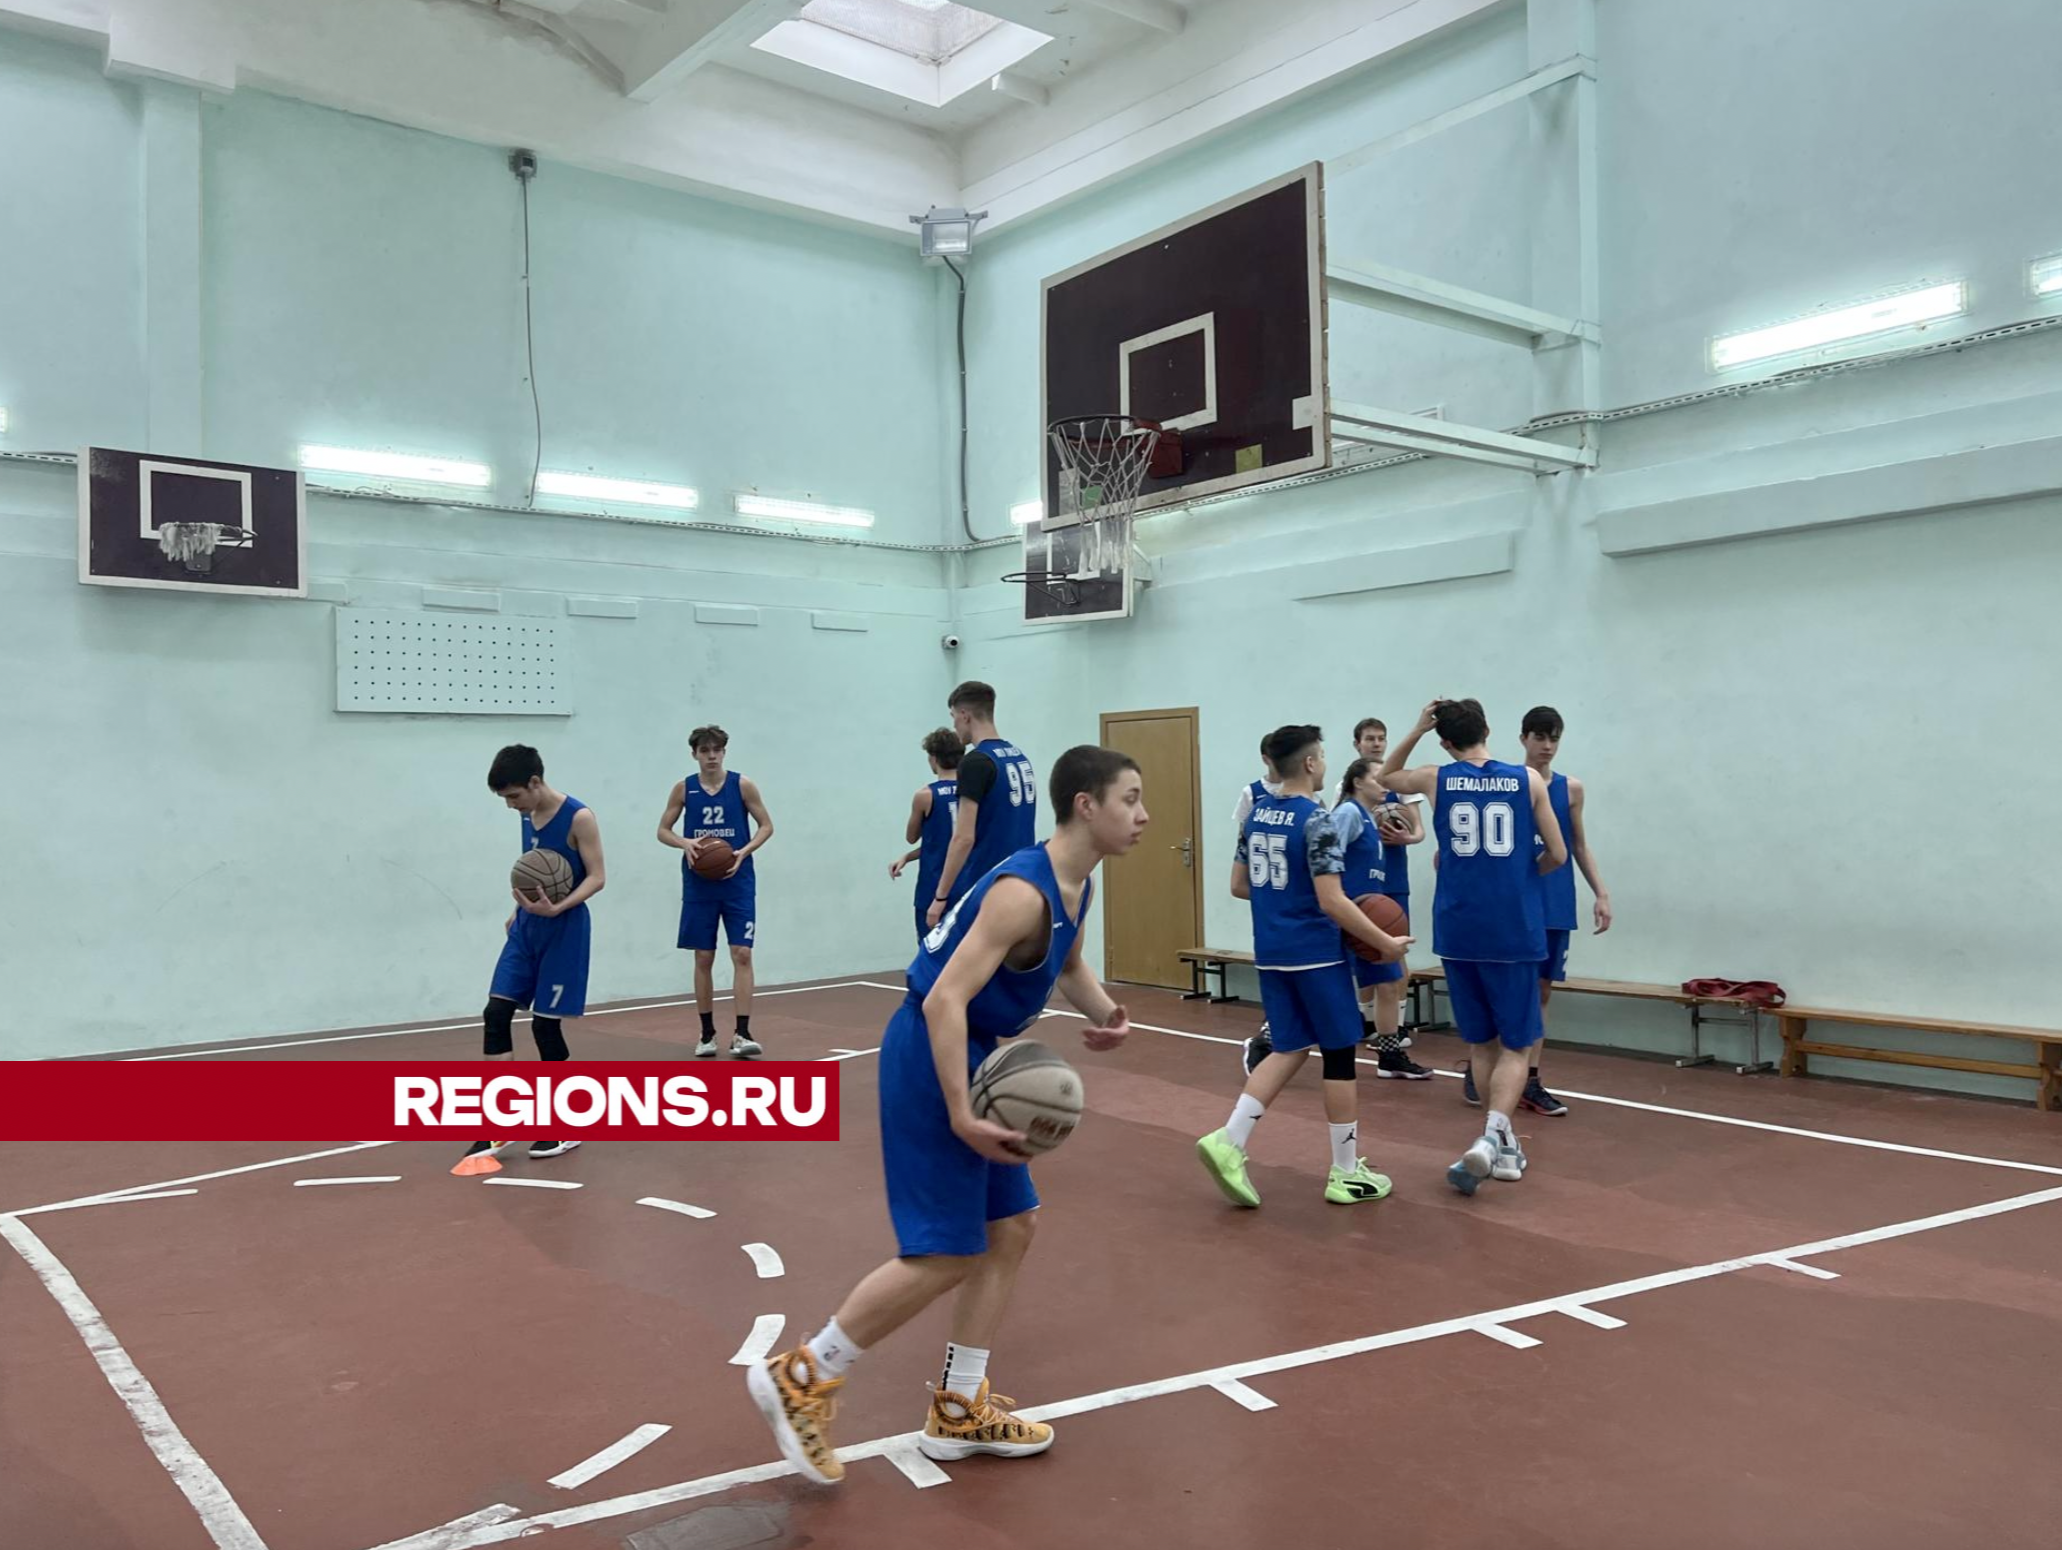 Мужская сборная из Жуковского заняла второе место во Всероссийской школьной баскетбольной лиге